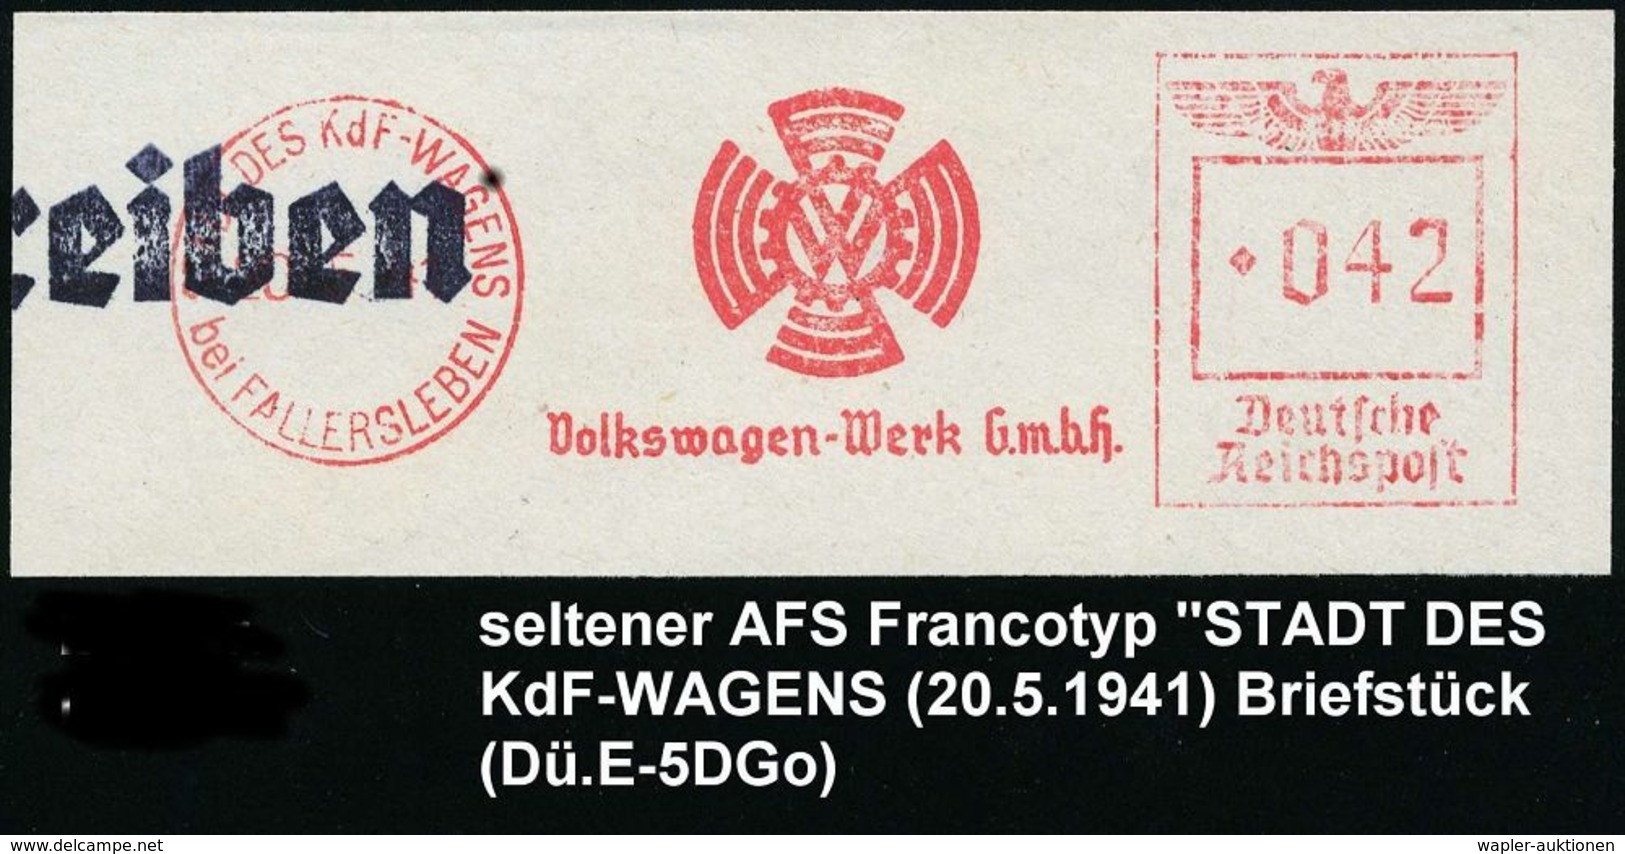 VOLKSWAGEN / VW / K.-D.-F.-WAGEN / PORSCHE : STADT DES KdF-WAGENS/ Bei FALLERSLEBEN/ VW/ Volkswagen-Werk GmbH 1941 (19.8 - Voitures